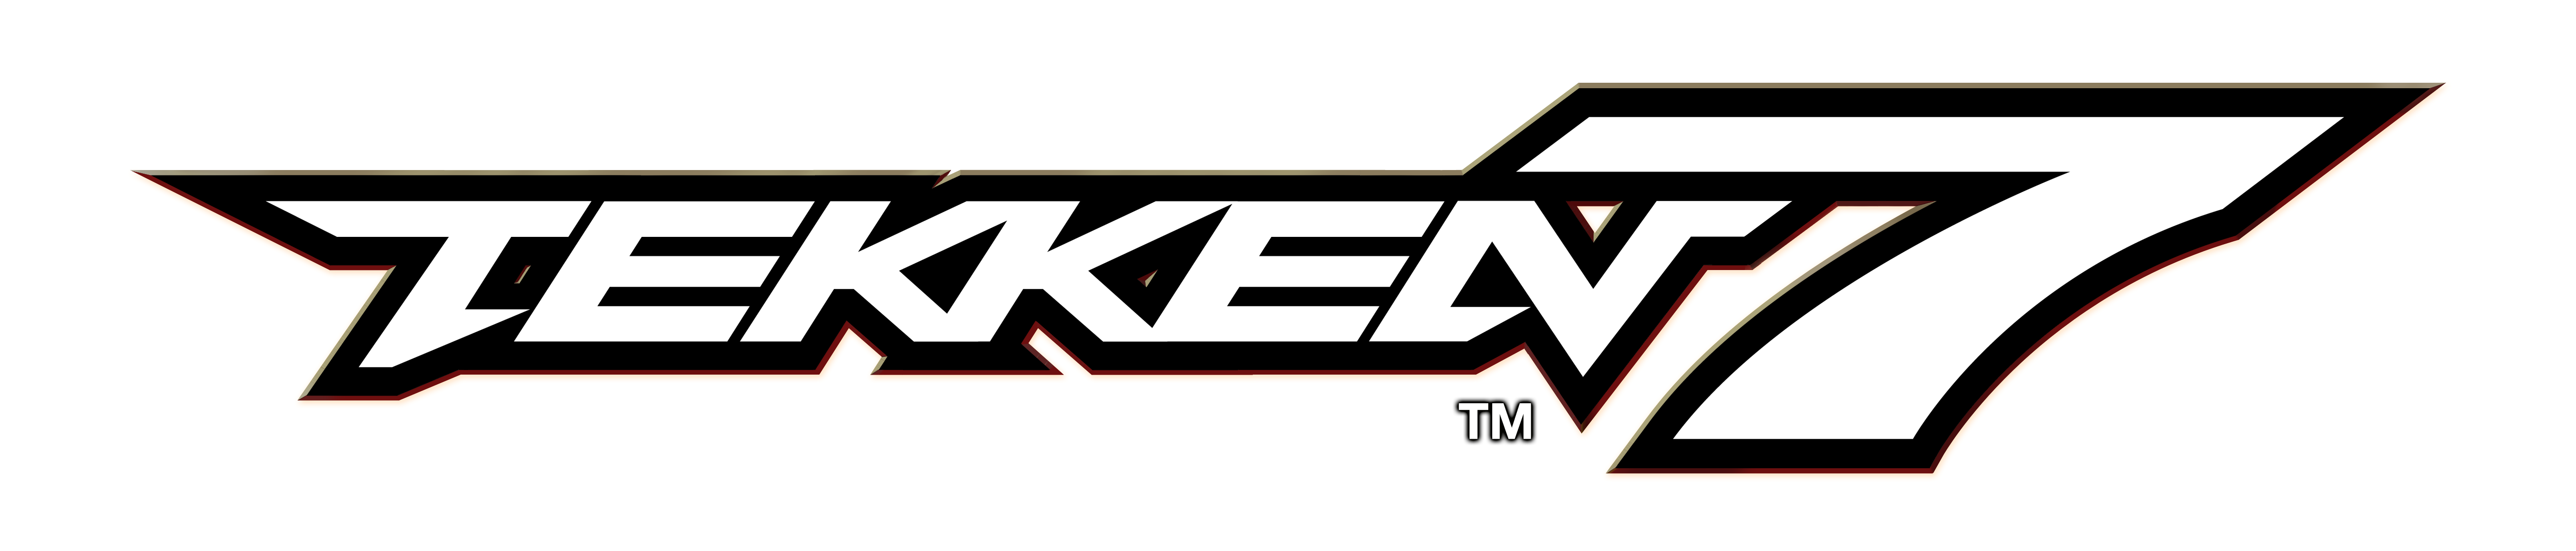 Tekken 7 Logos.